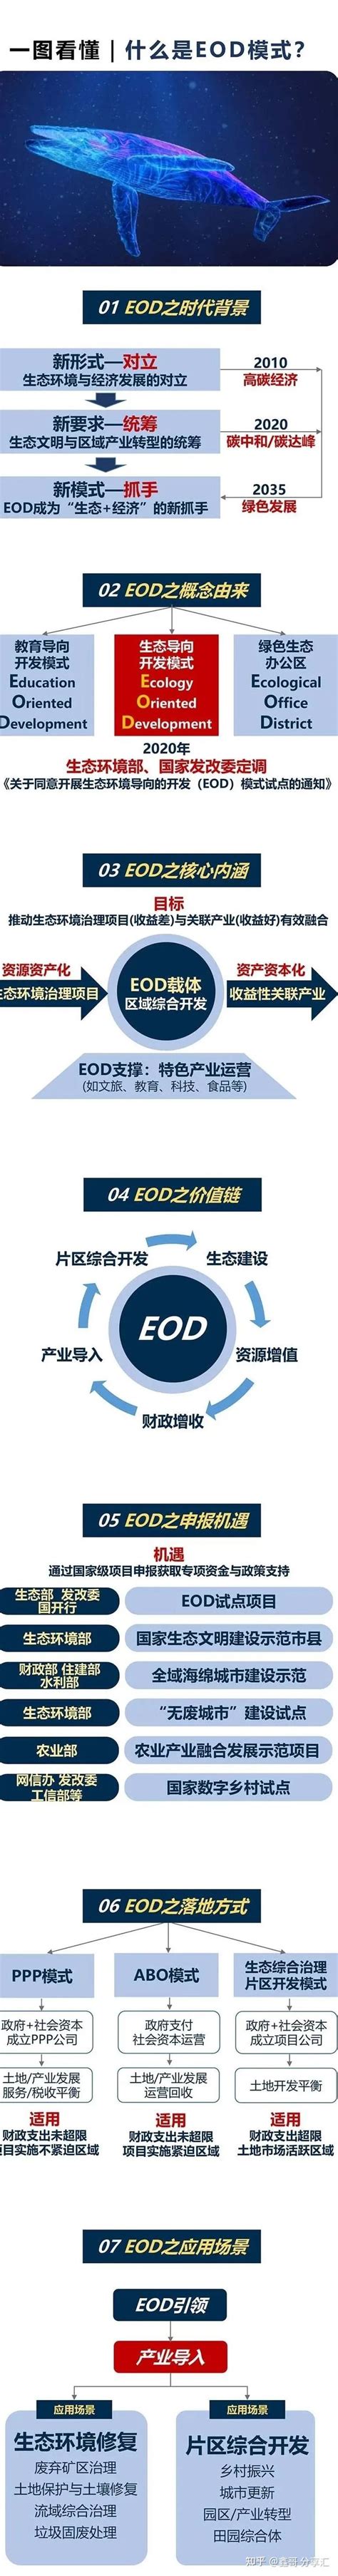 一文弄懂什么是EOD模式 - 知乎